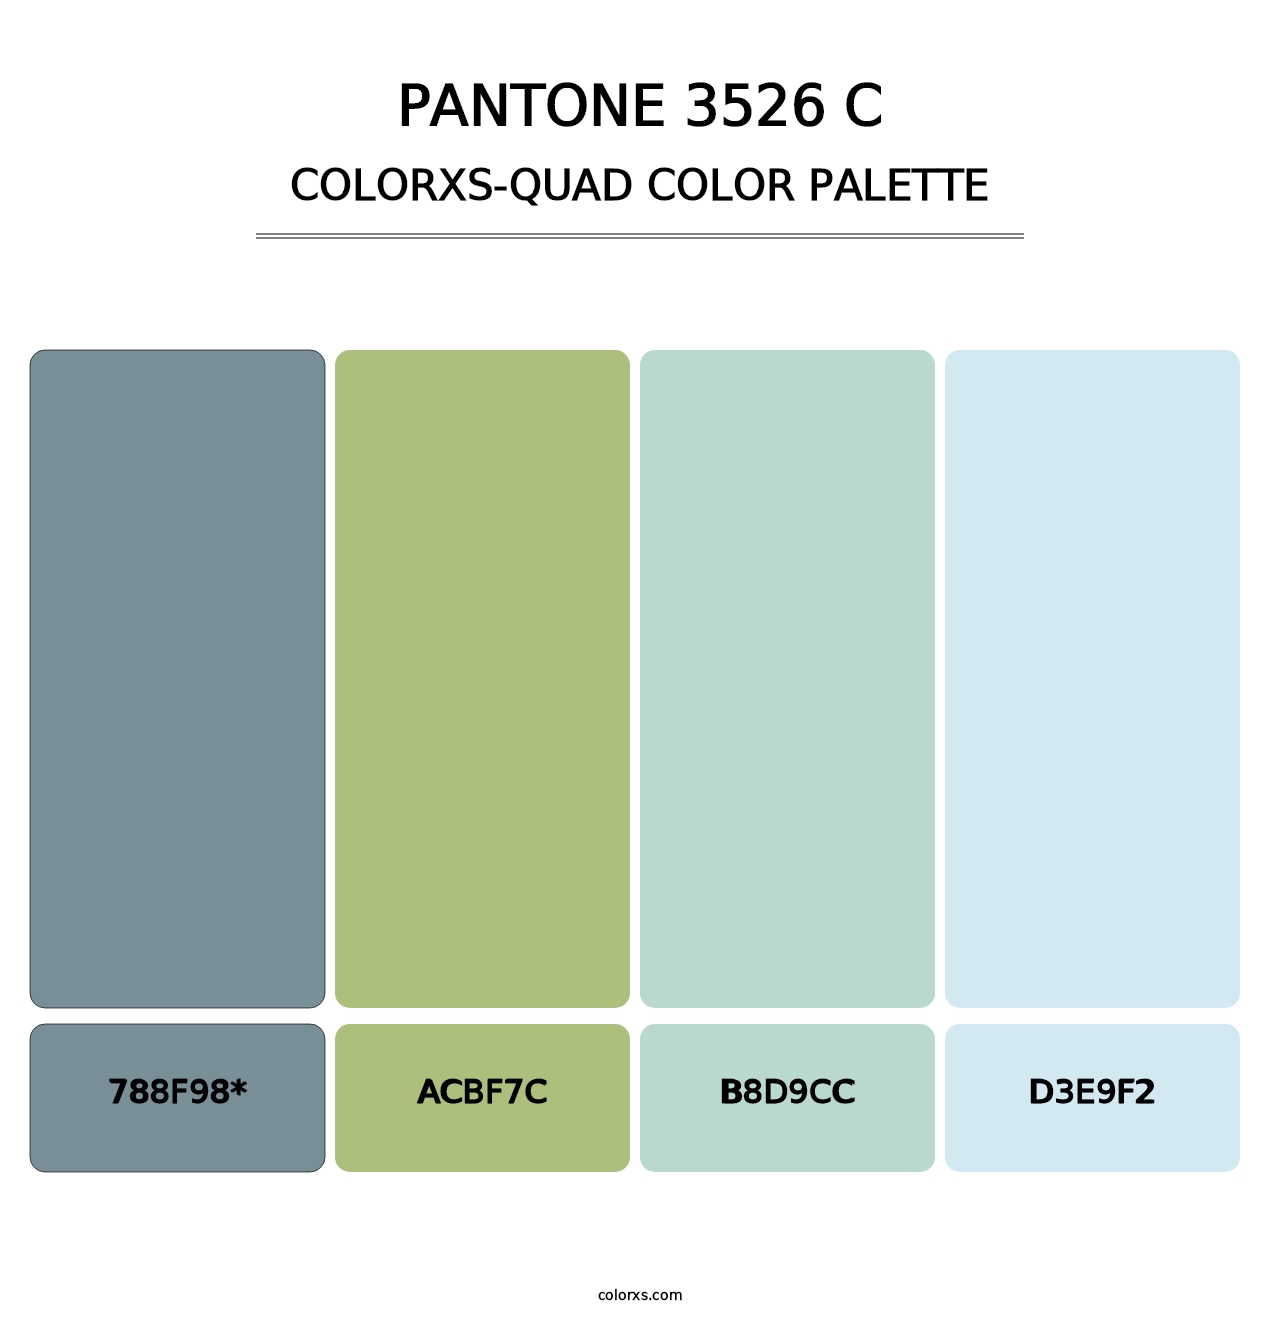 PANTONE 3526 C - Colorxs Quad Palette